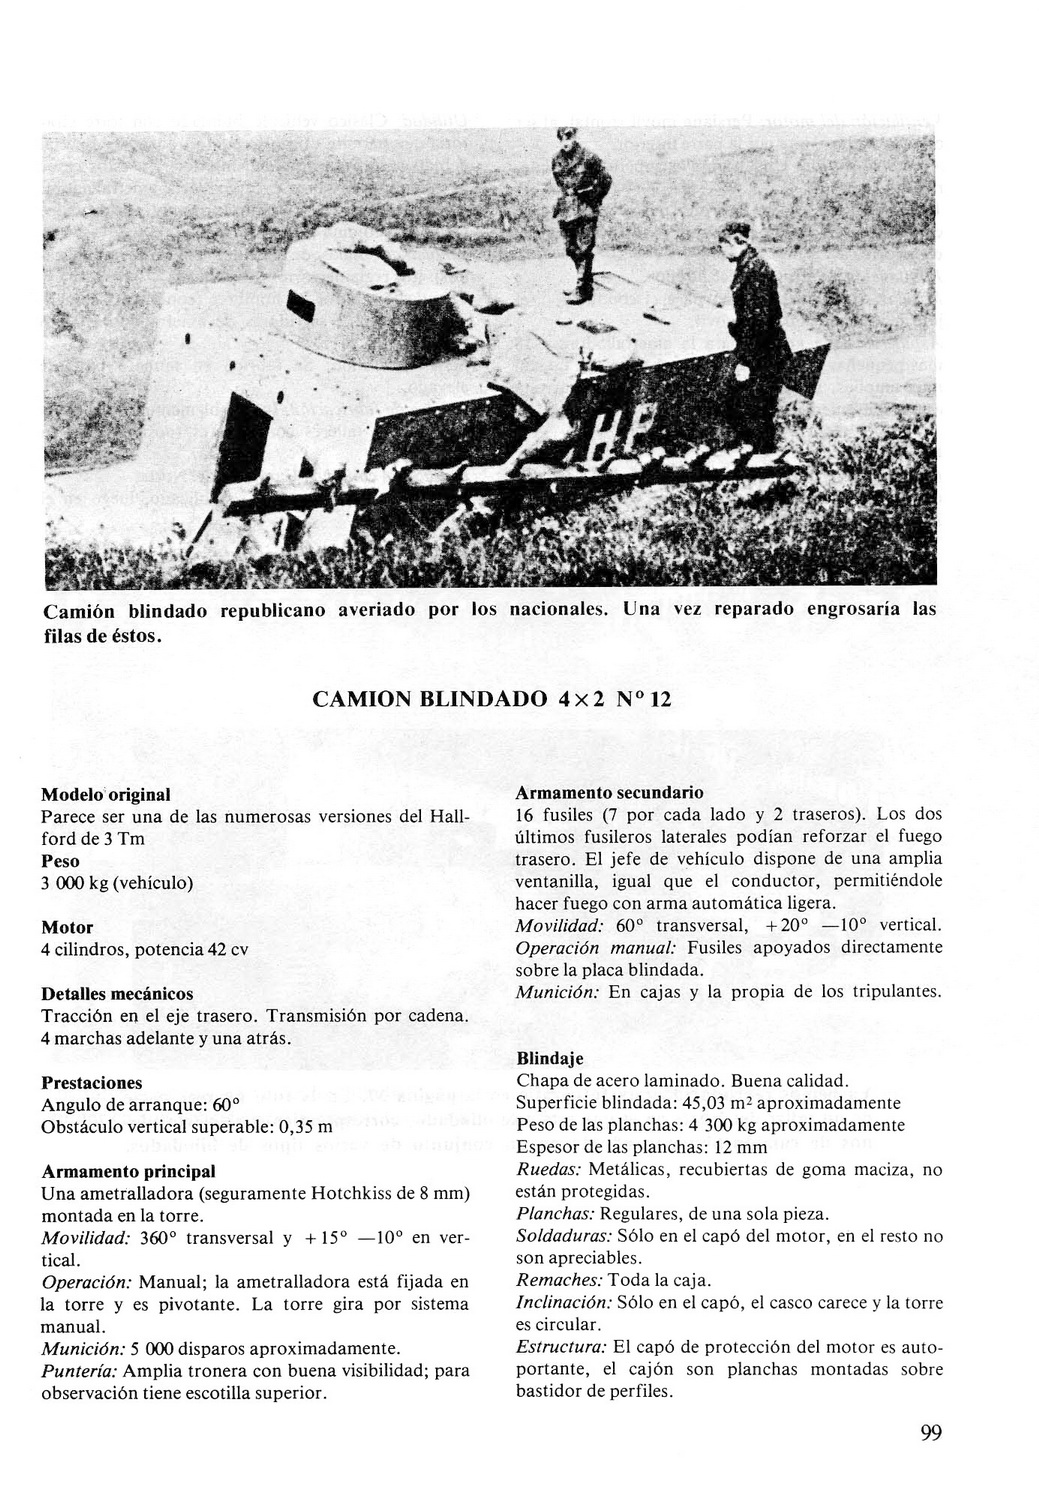 Carros De Combate Y Vehiculos Blindados De La Guerra 1936 1939 [F.C.Albert 1980]_Страница_097р.jpg